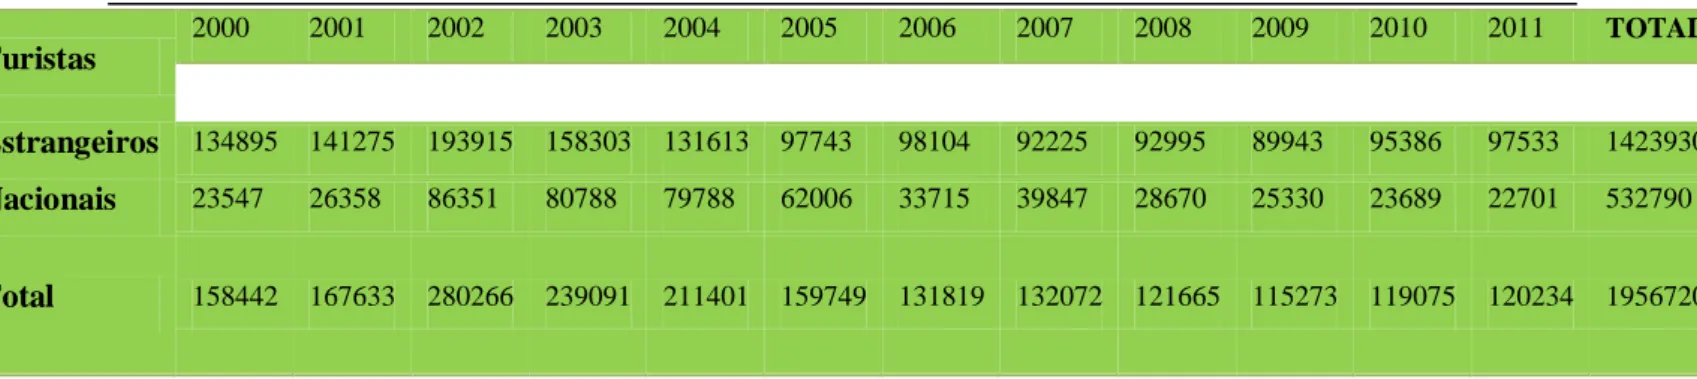 Tabela V - Número de turistas em Óbidos entre o ano 2000 e 2011, adaptado do Posto de turismo de Óbidos (2011)